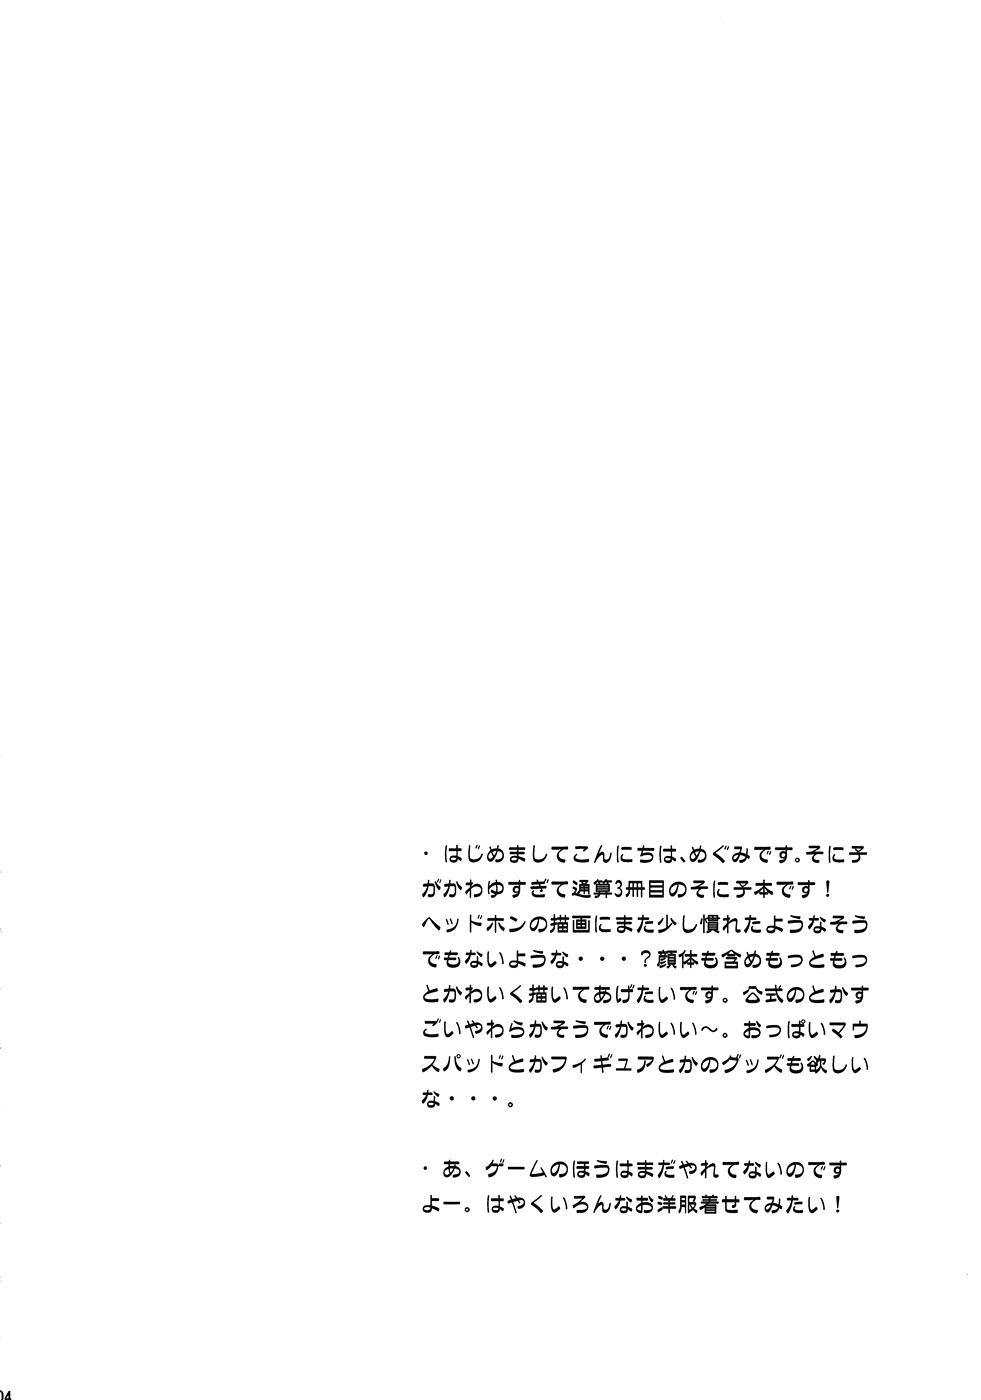 Cornudo Takakuteki Idol - Super sonico Femdom Clips - Page 3